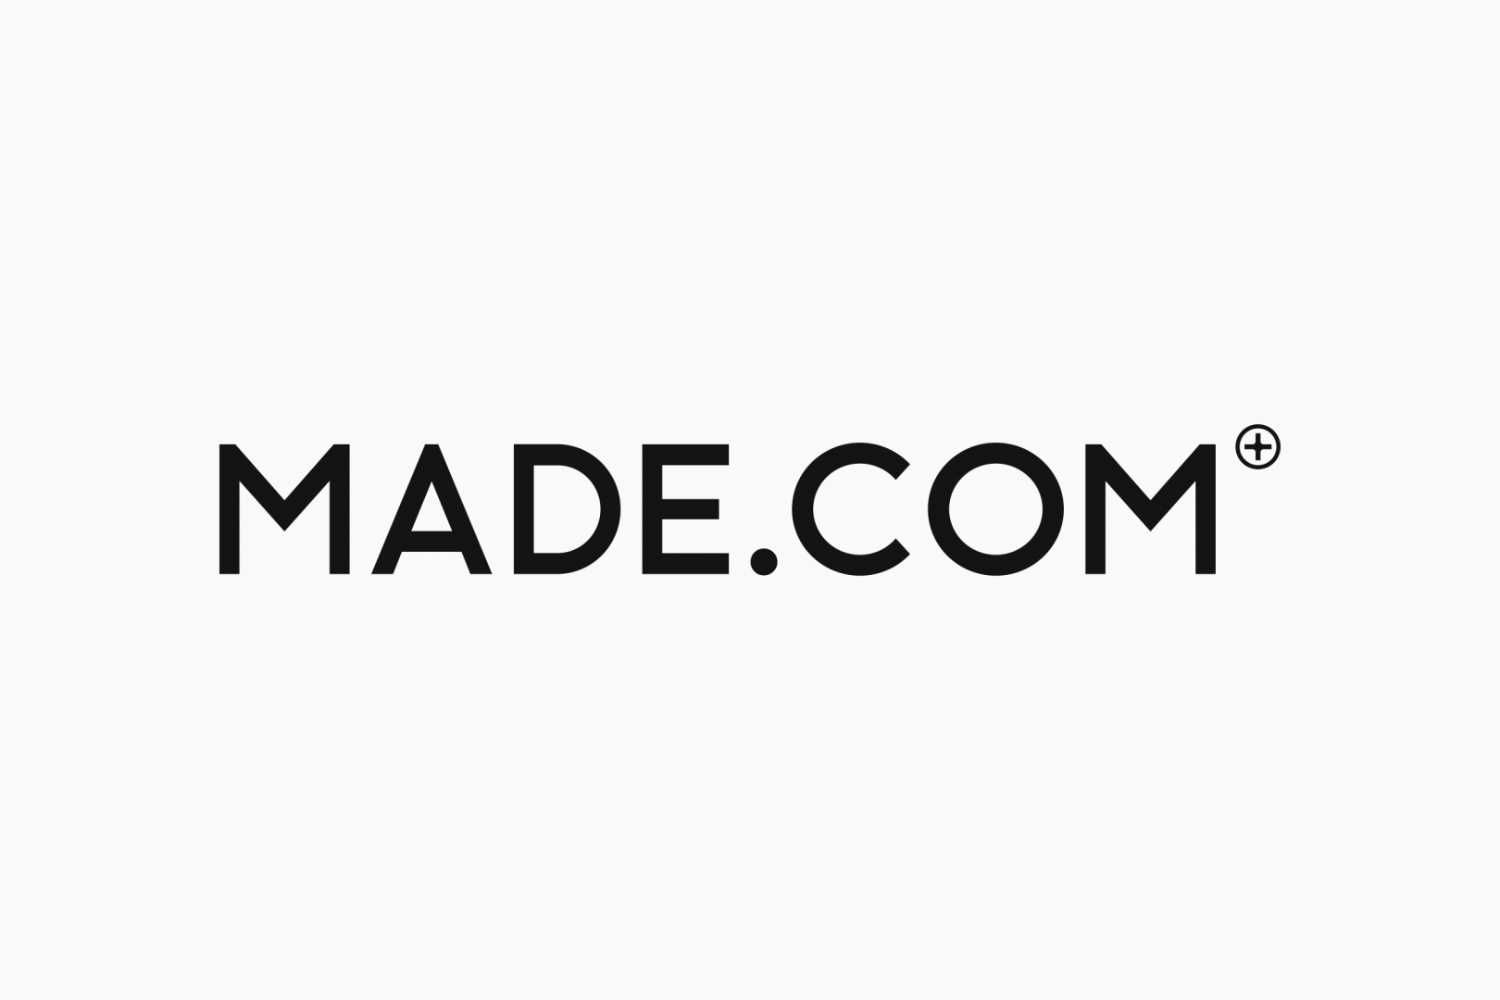 Off site trailer full of Brand new Made.com sofas